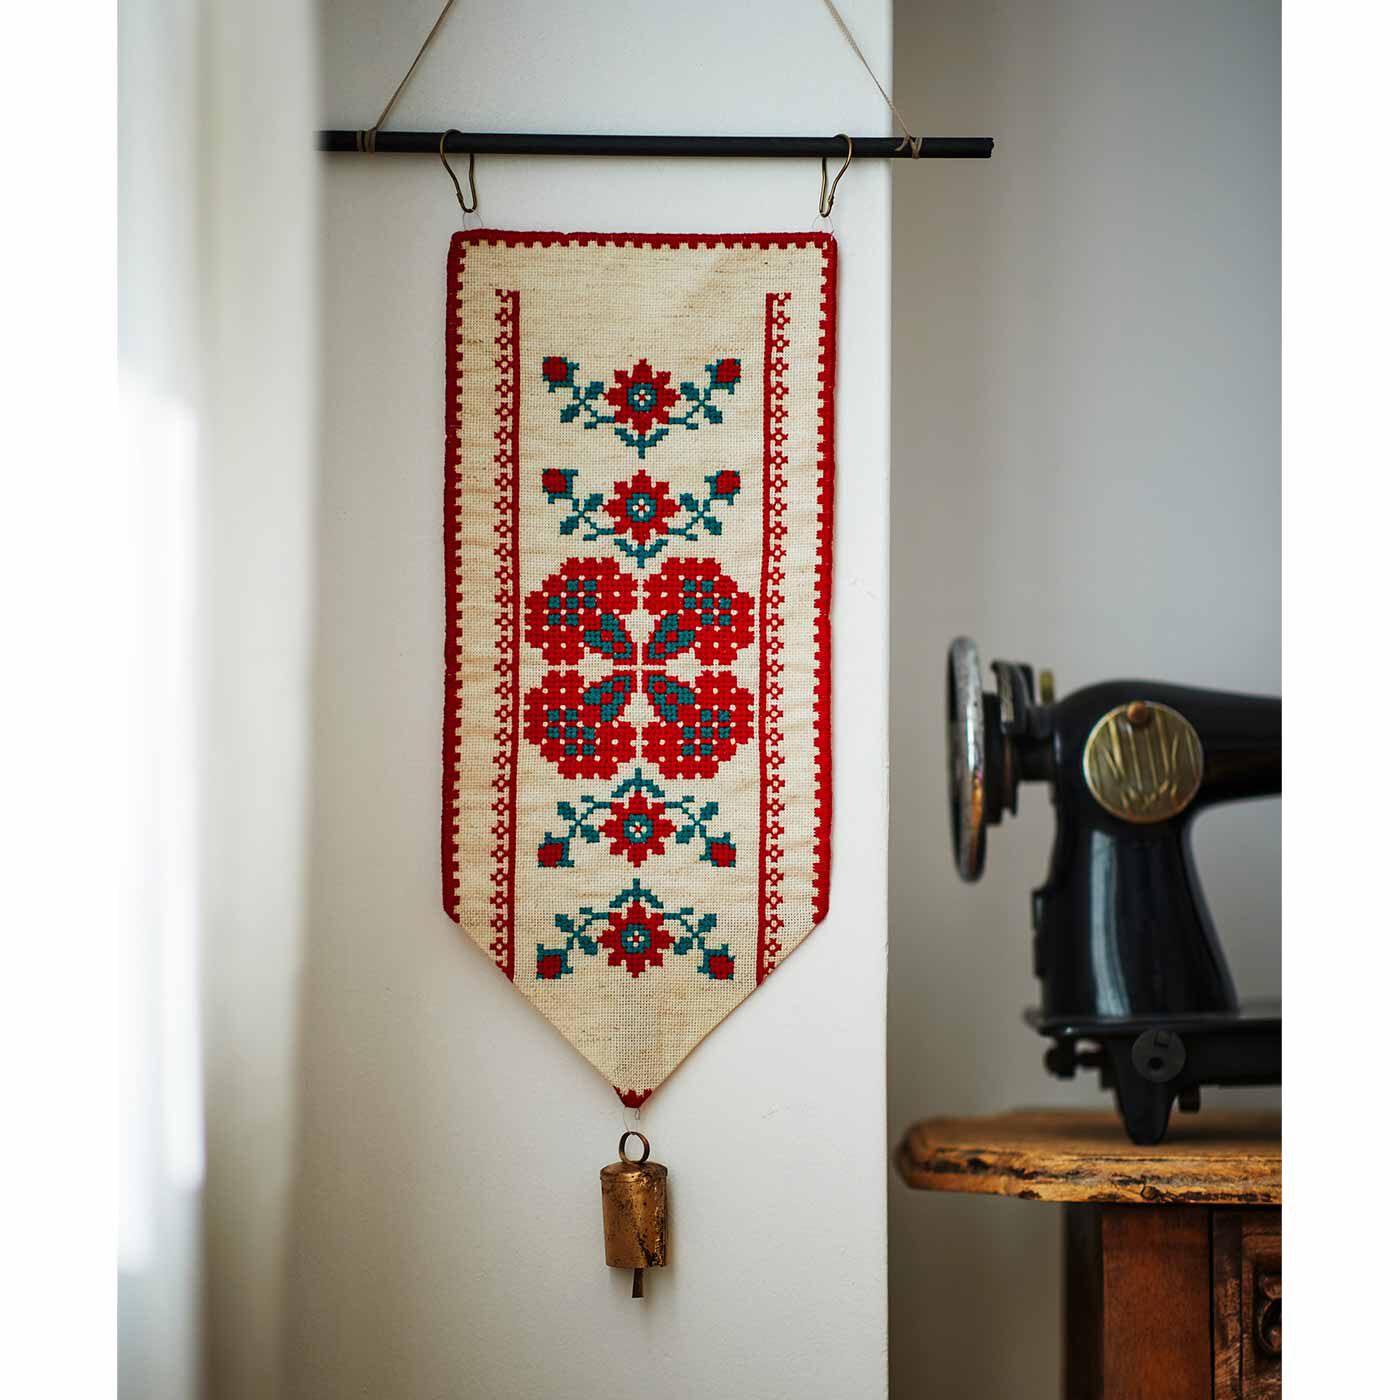 Couturier|トランシルヴァニアからの贈り物 カロタセグの編みクロスステッチタペストリーの会|一枚でも存在感たっぷり。カウベルを付けてベルプルにしても。